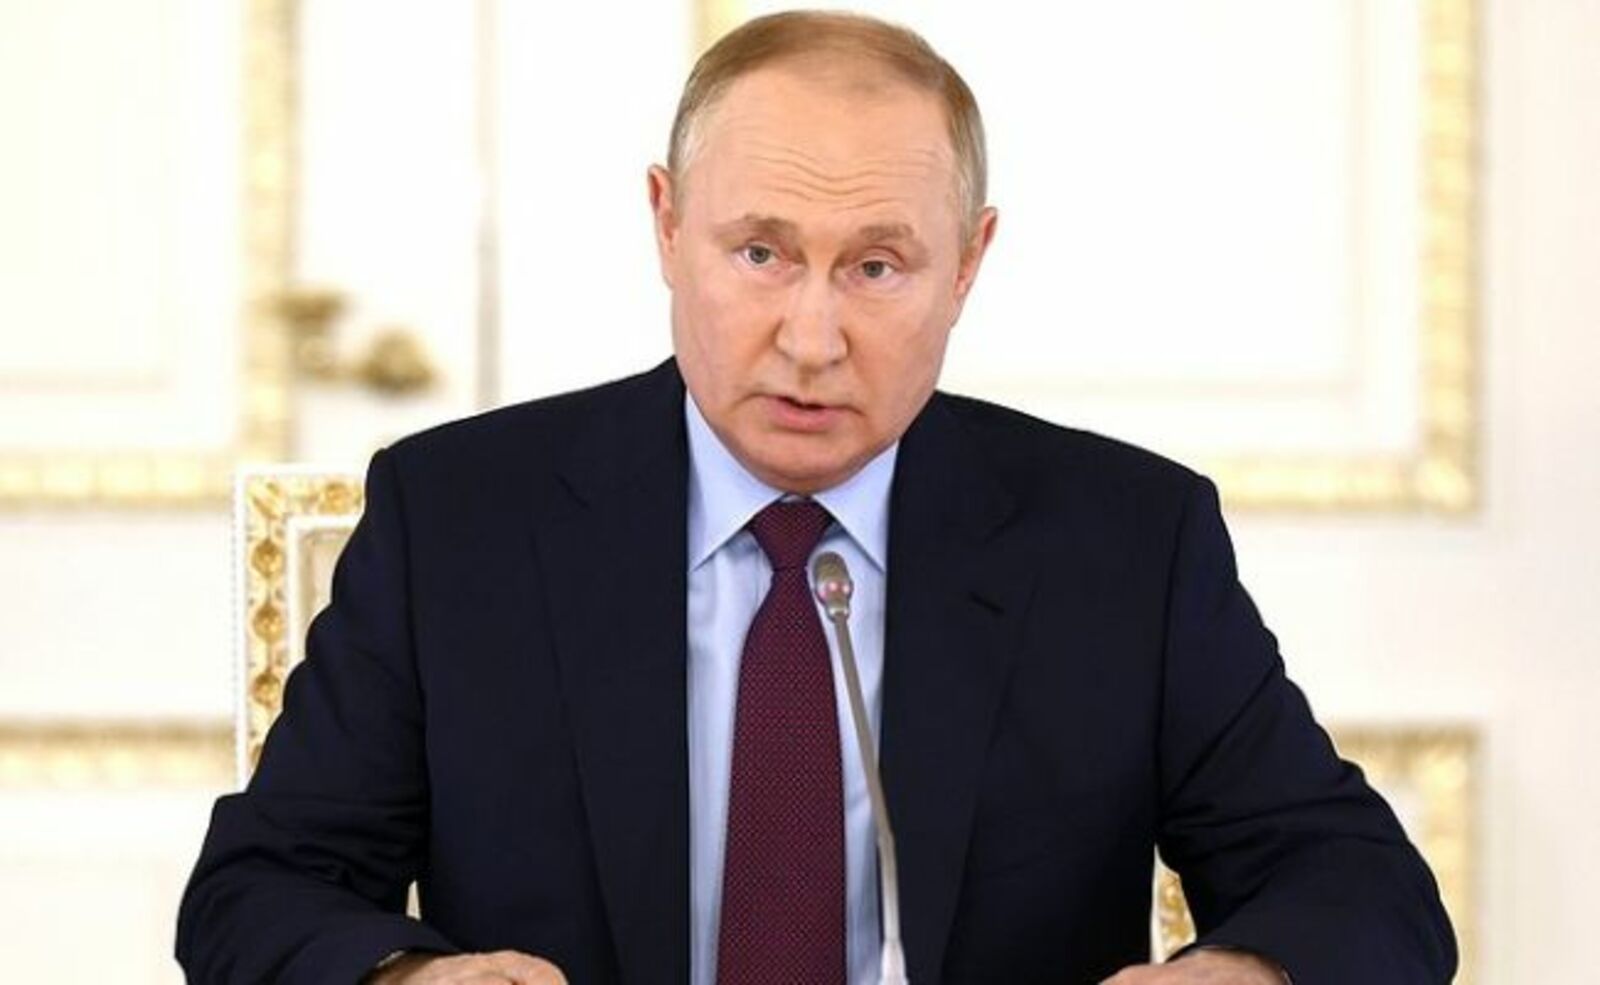 Путин иҡтисад секторын үҫтереү буйынса кәңәшмә үткәрәсәк